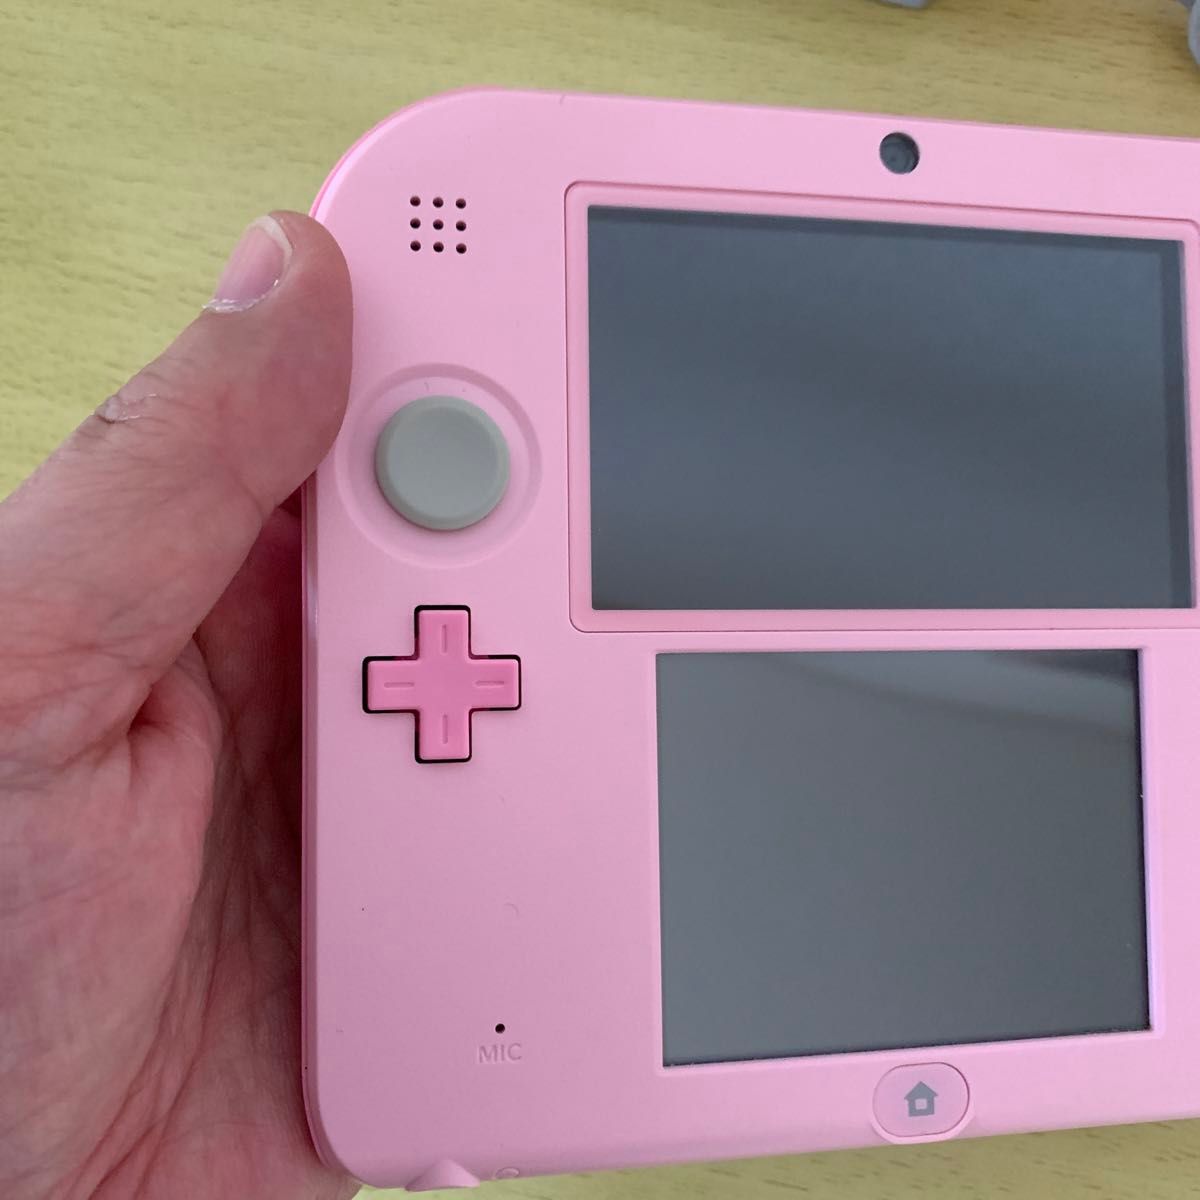 ニンテンドー2DS(ピンク)超美品とおまけのソフト(ポケモンサン)とミニ携帯ゲーム